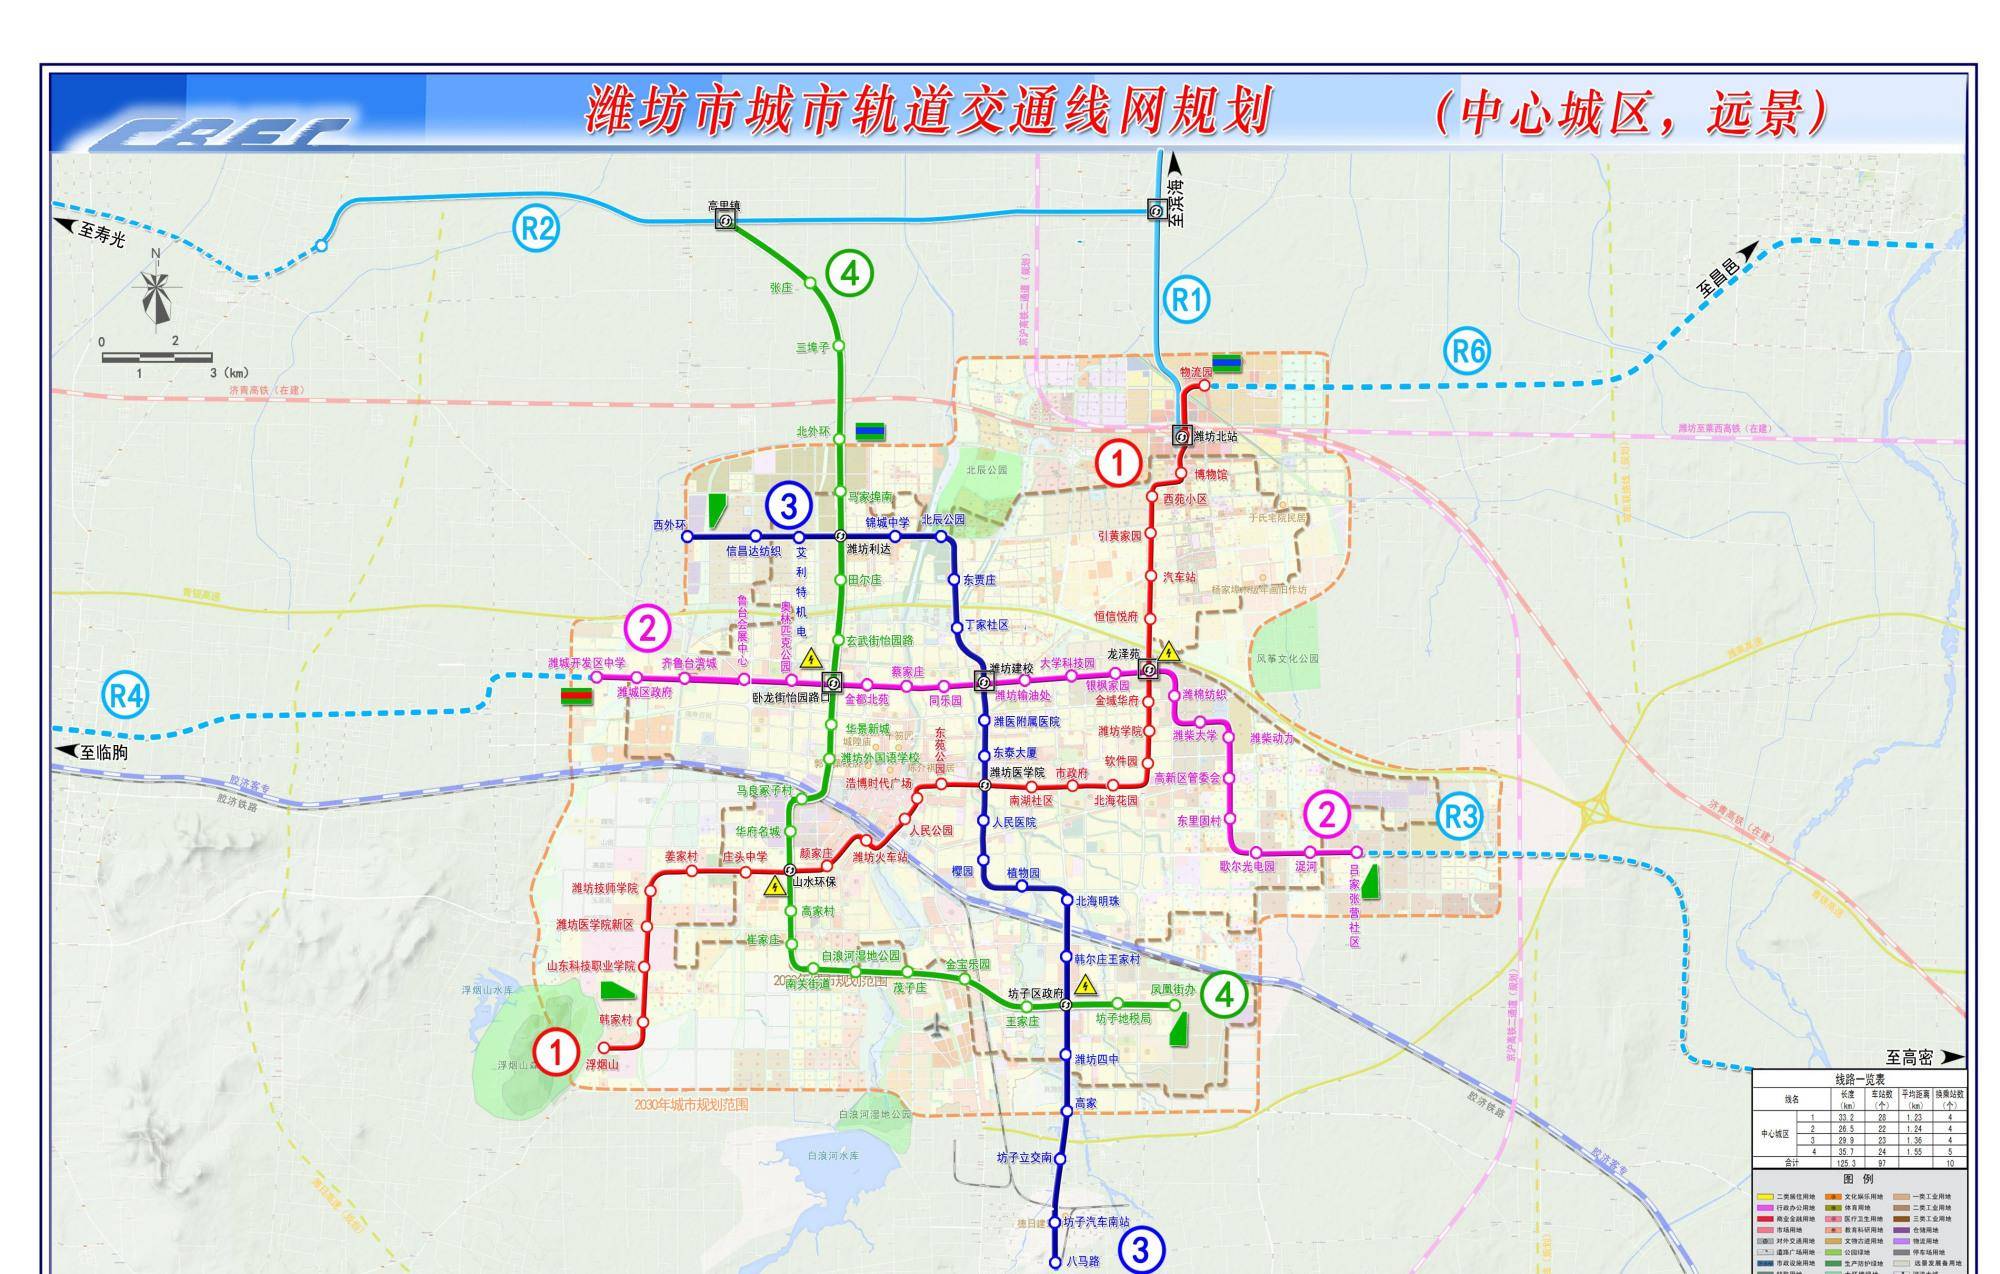 潍坊即将建设一条新地铁,全长33.2公里,预计今年底开工